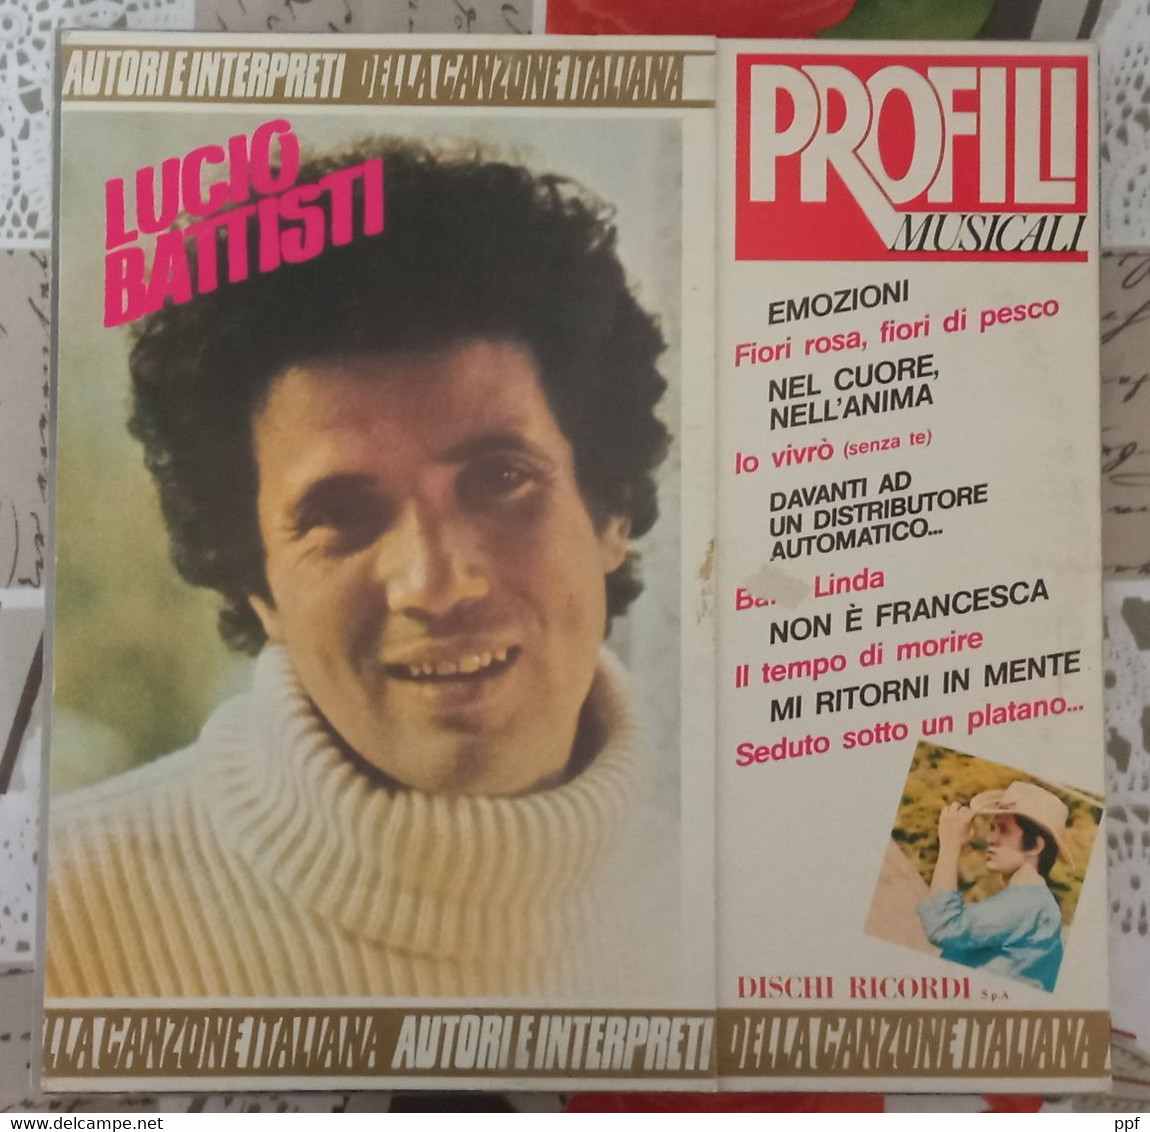 Lucio Battisti - Profili Musicali Dischi Ricordi Lp 33 Giri In Ottime Condizioni - Other - Italian Music